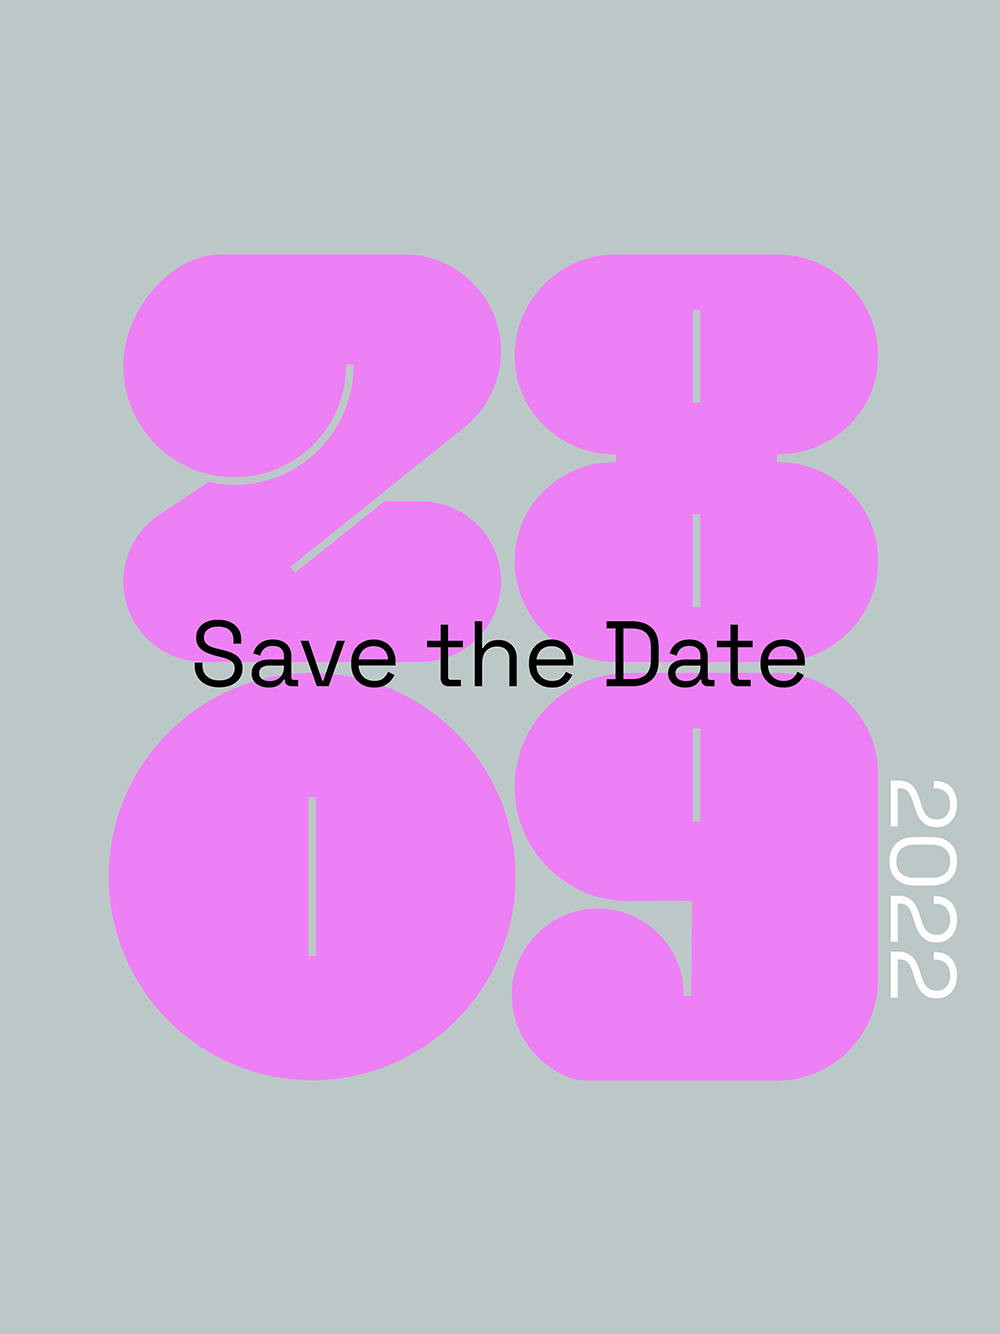 RIOT NOW! Datum in den Zahlen 28 und 09 untereinander darüber Aufschrift save the date und rechts 2022 animiert wechselnde Farben pink, grau und schwarz 